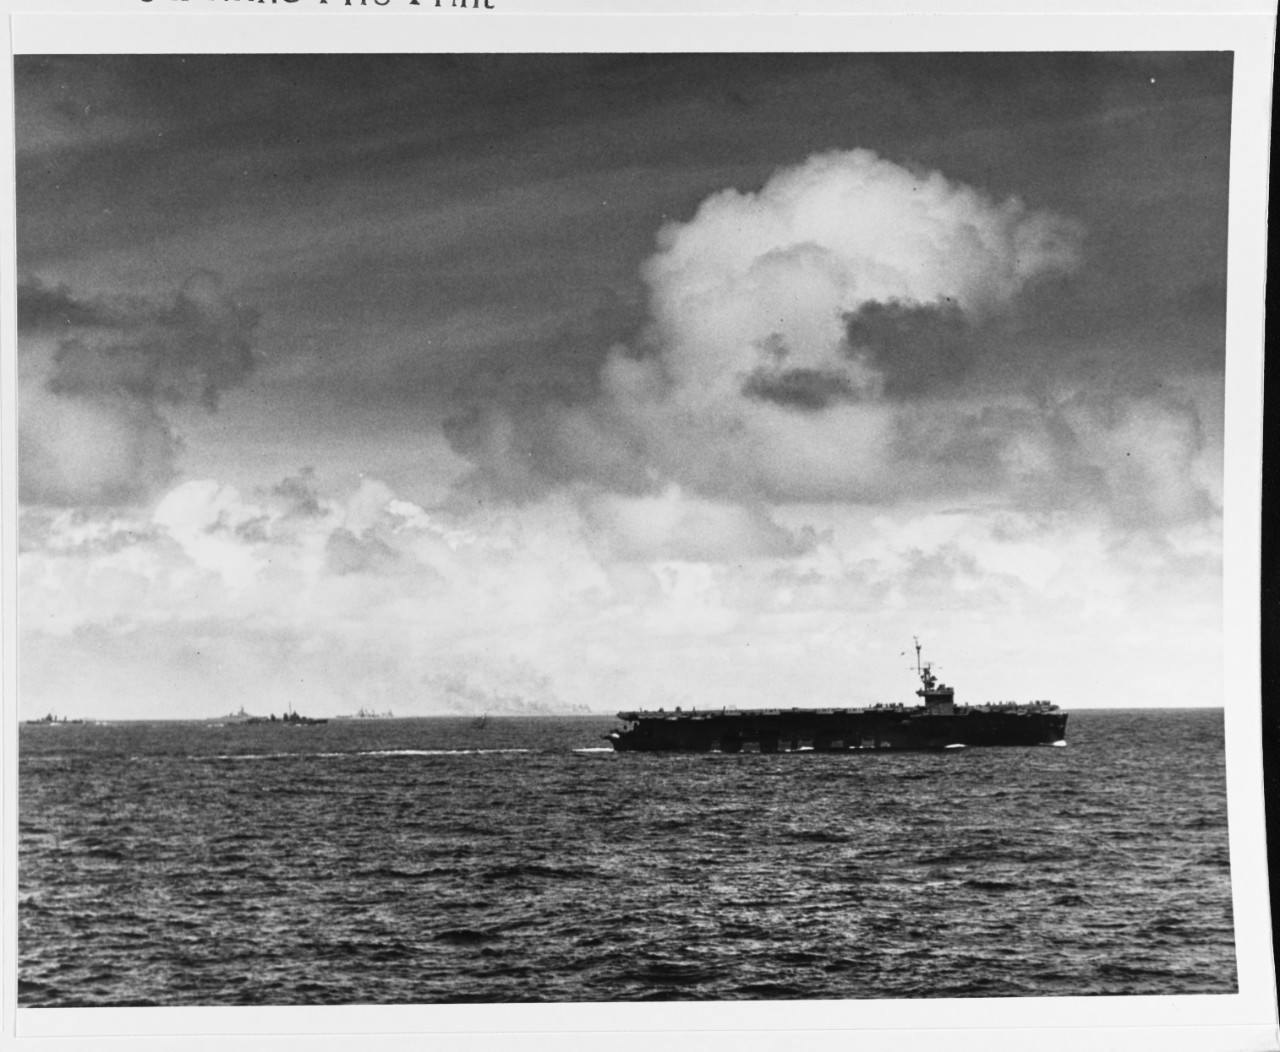 Kwajalein invasion, January-February 1944.